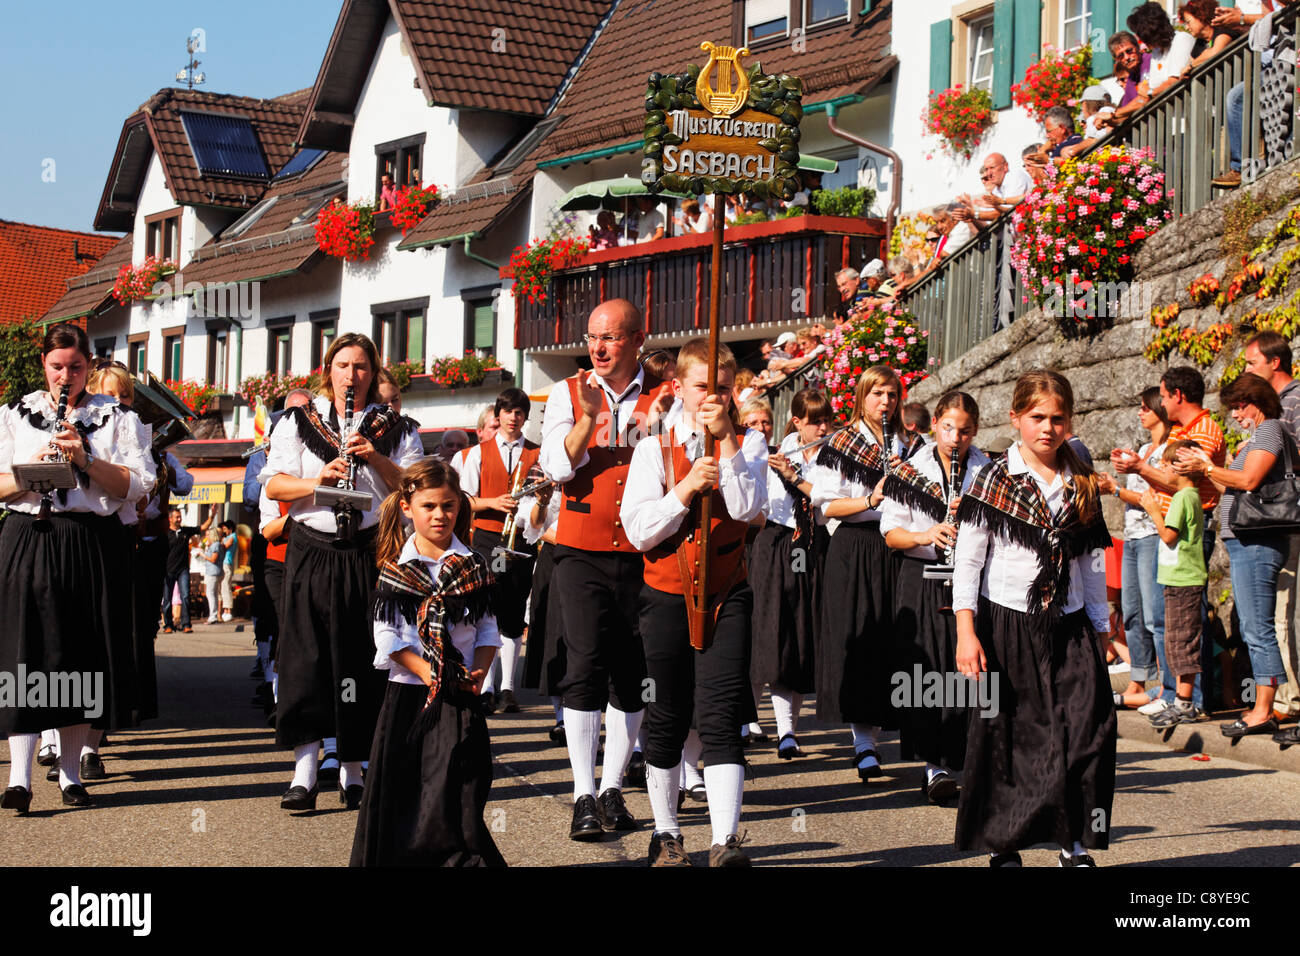 Parade de costumes traditionnels, Sasbachwalden, Forêt-Noire, Bade-Wurtemberg, Allemagne Banque D'Images